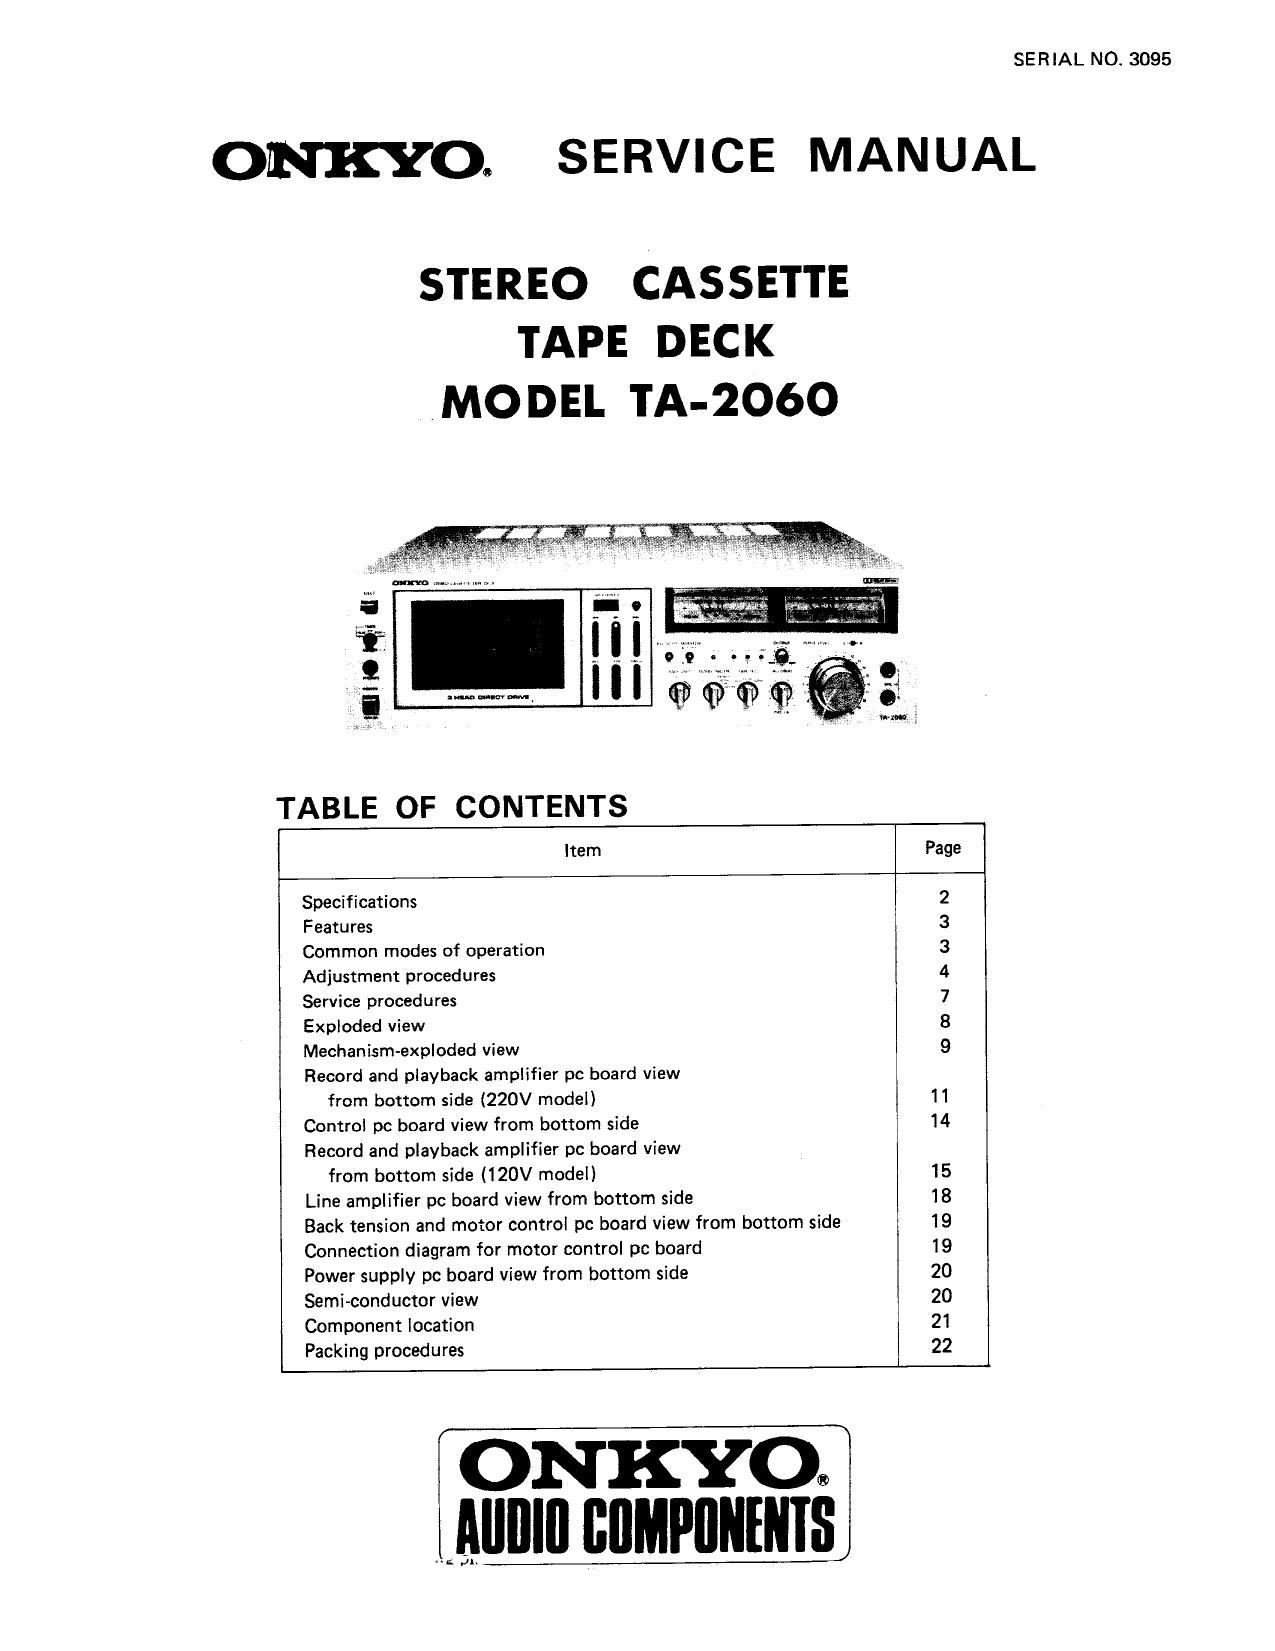 Onkyo TA 2060 Service Manual